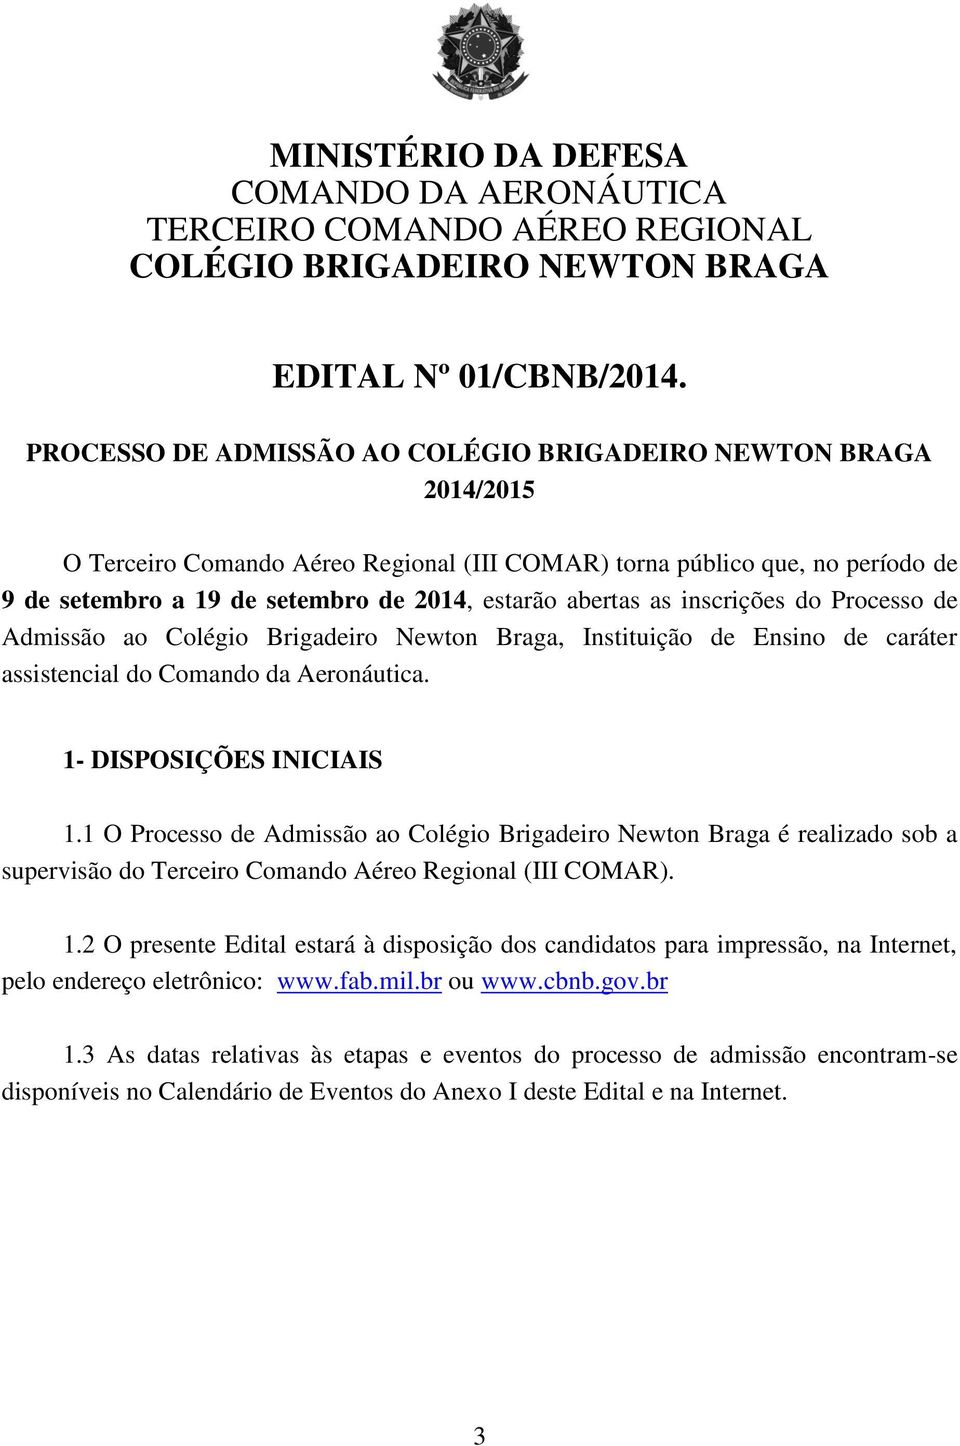 abertas as inscrições do Processo de Admissão ao Colégio Brigadeiro Newton Braga, Instituição de Ensino de caráter assistencial do Comando da Aeronáutica. 1- DISPOSIÇÕES INICIAIS 1.